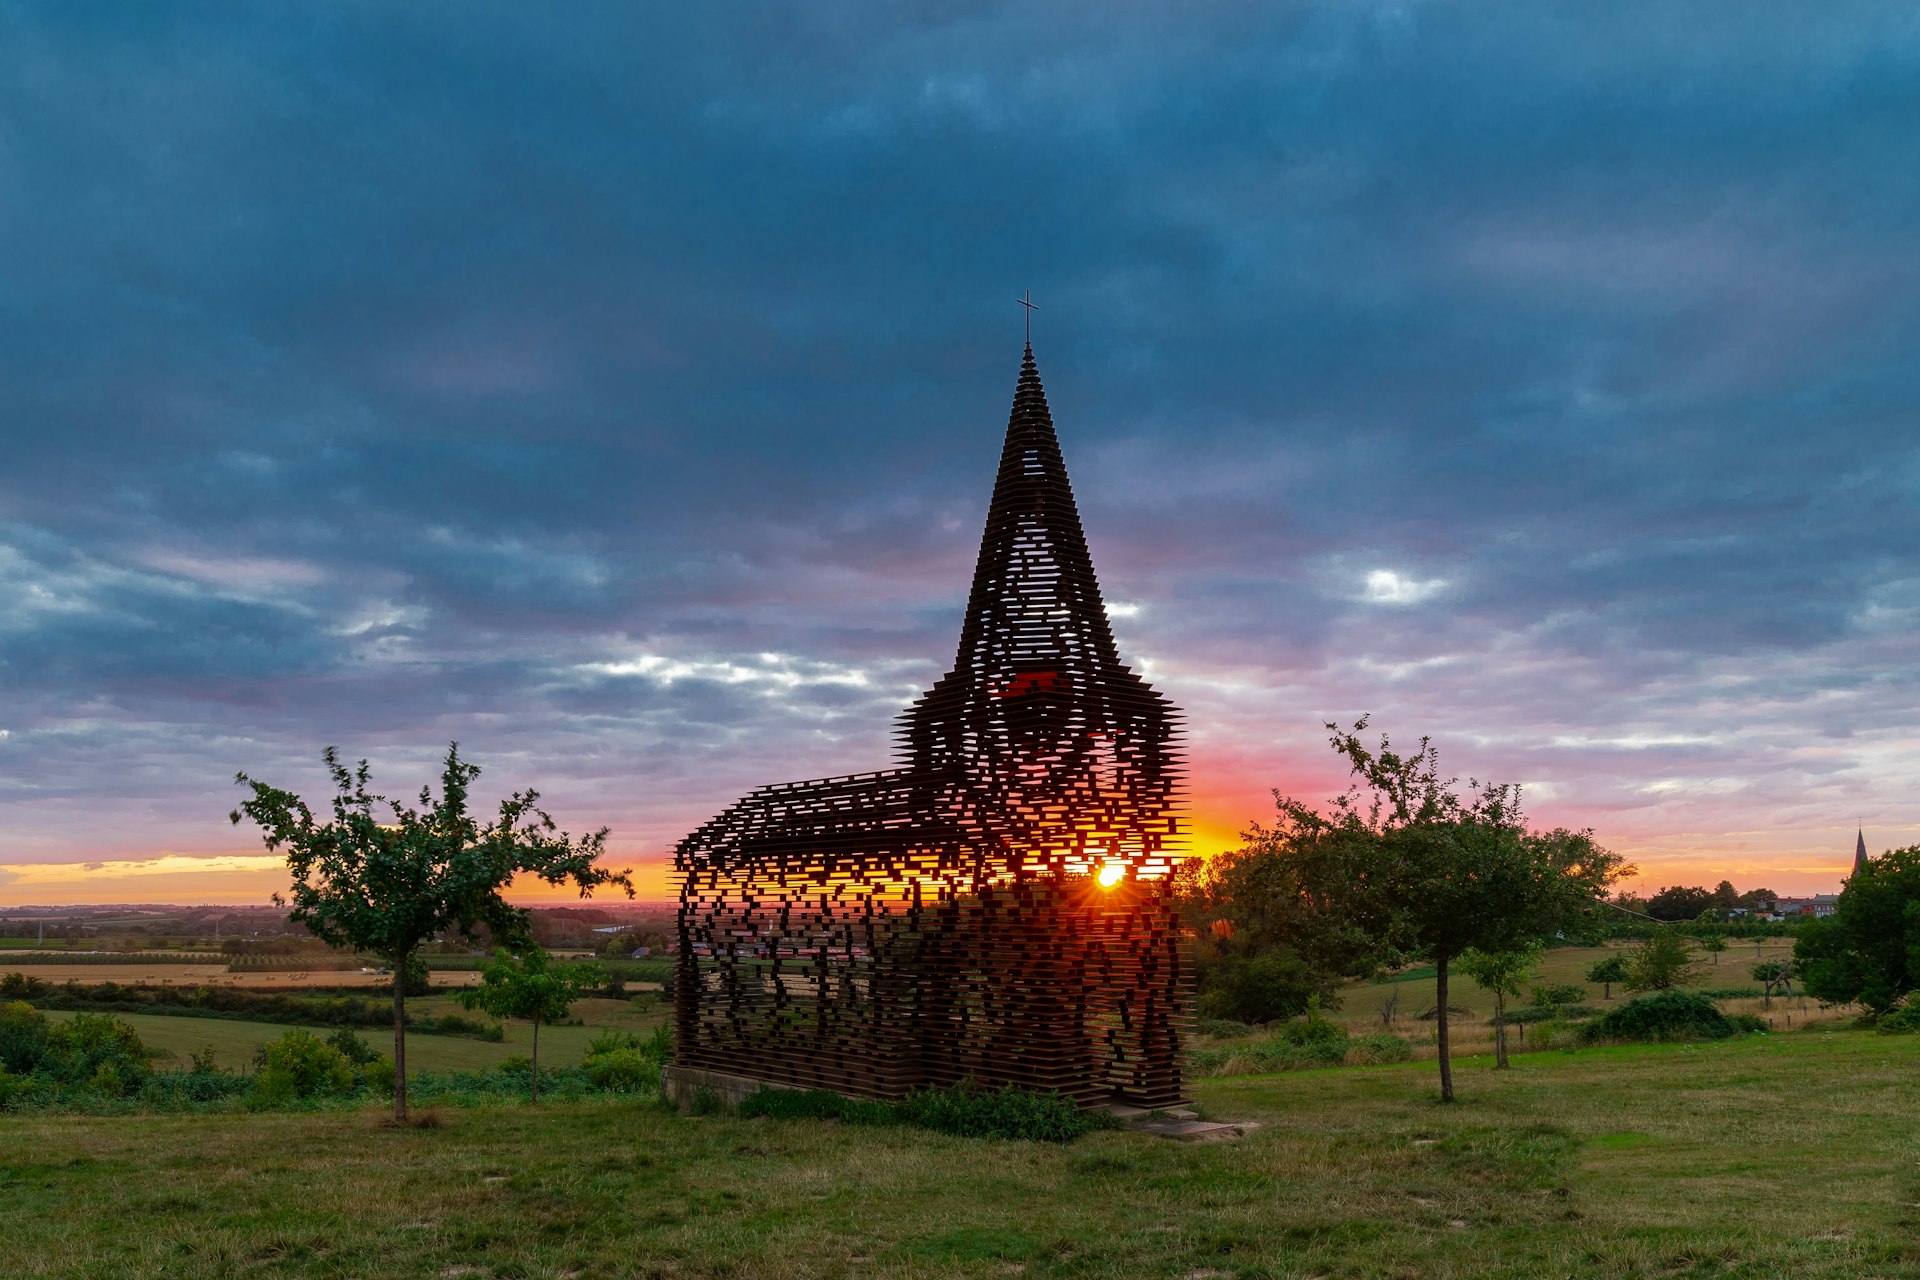 Uma escultura feita de ripas em forma de estrutura semelhante a uma capela, com o sol poente brilhando através dela